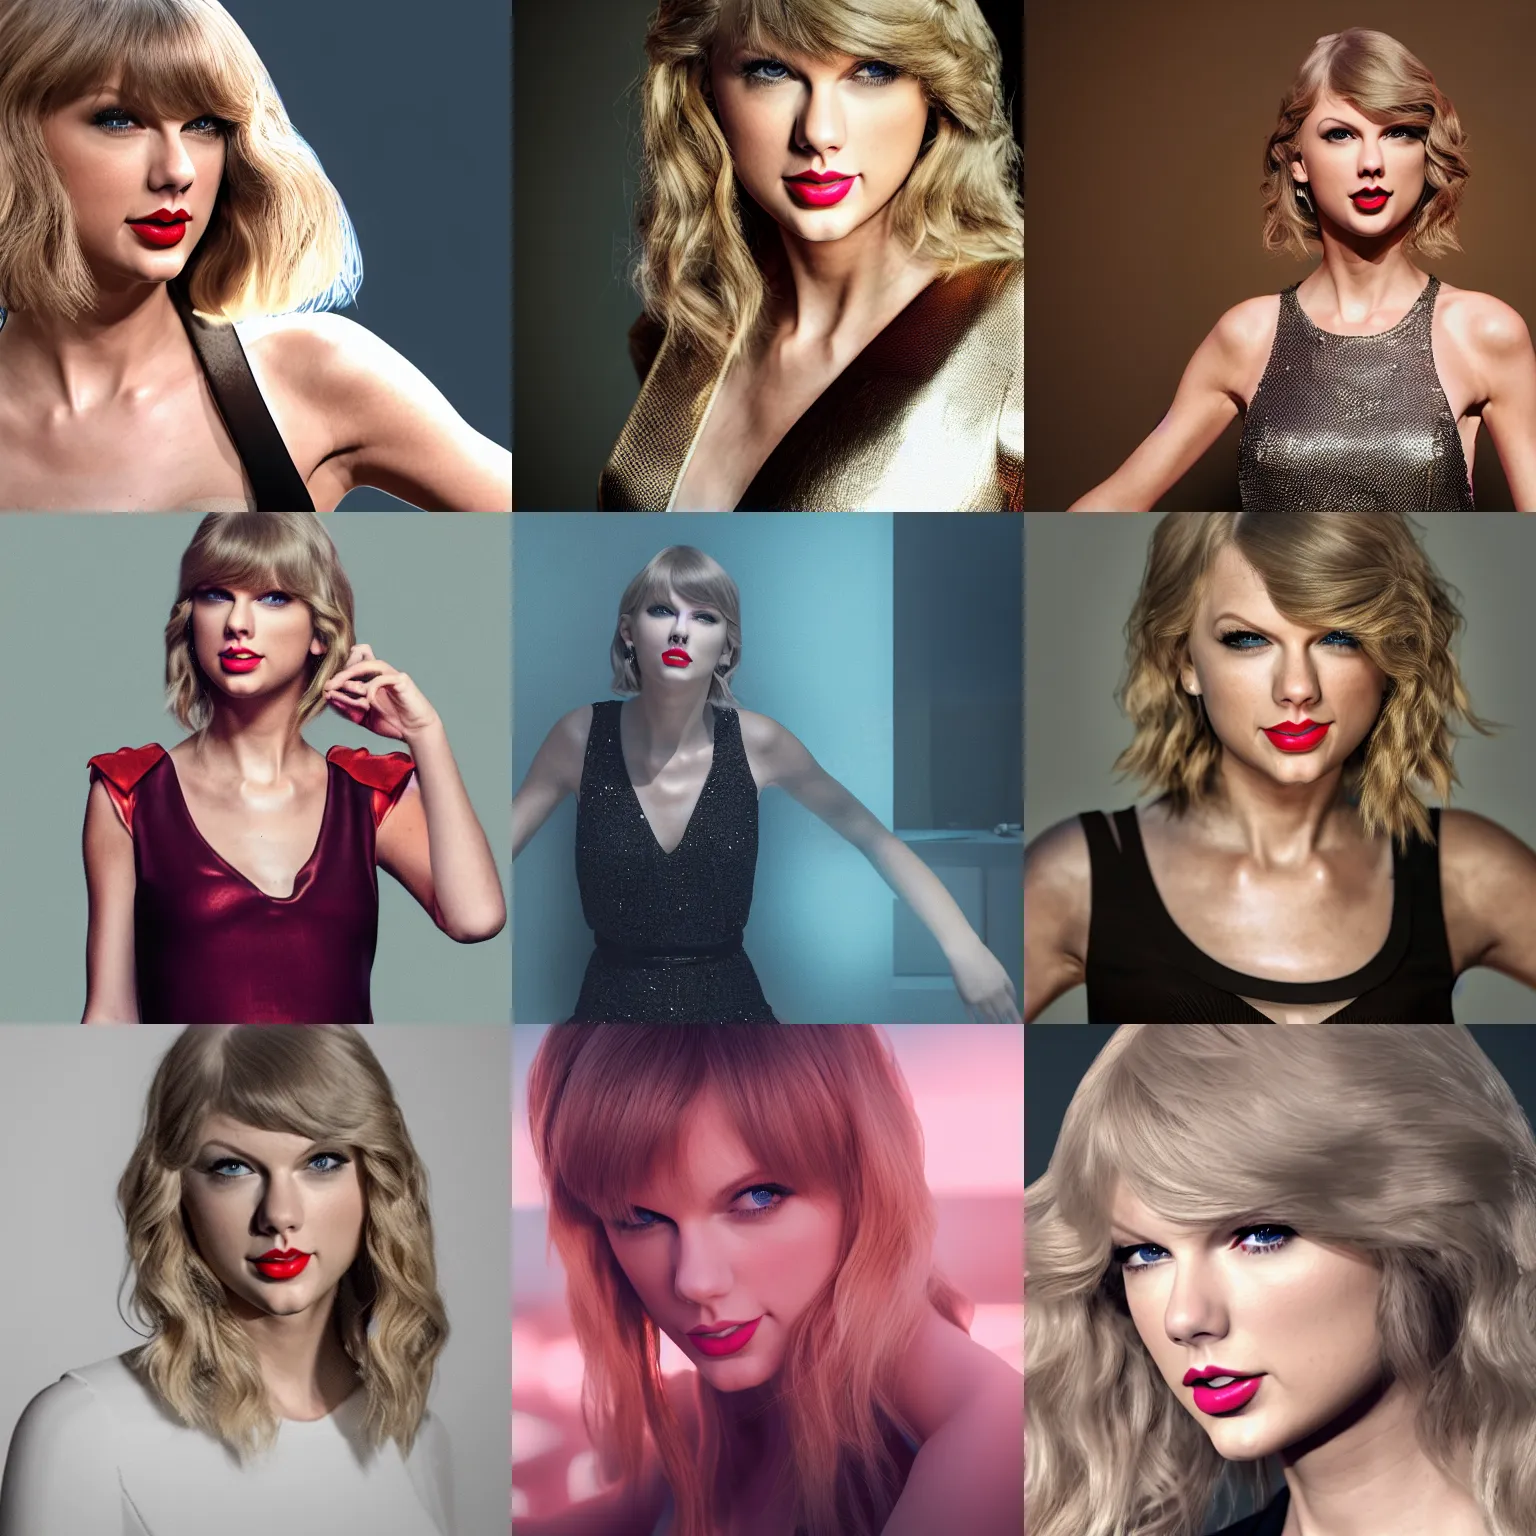 Prompt: Taylor Swift, octane render